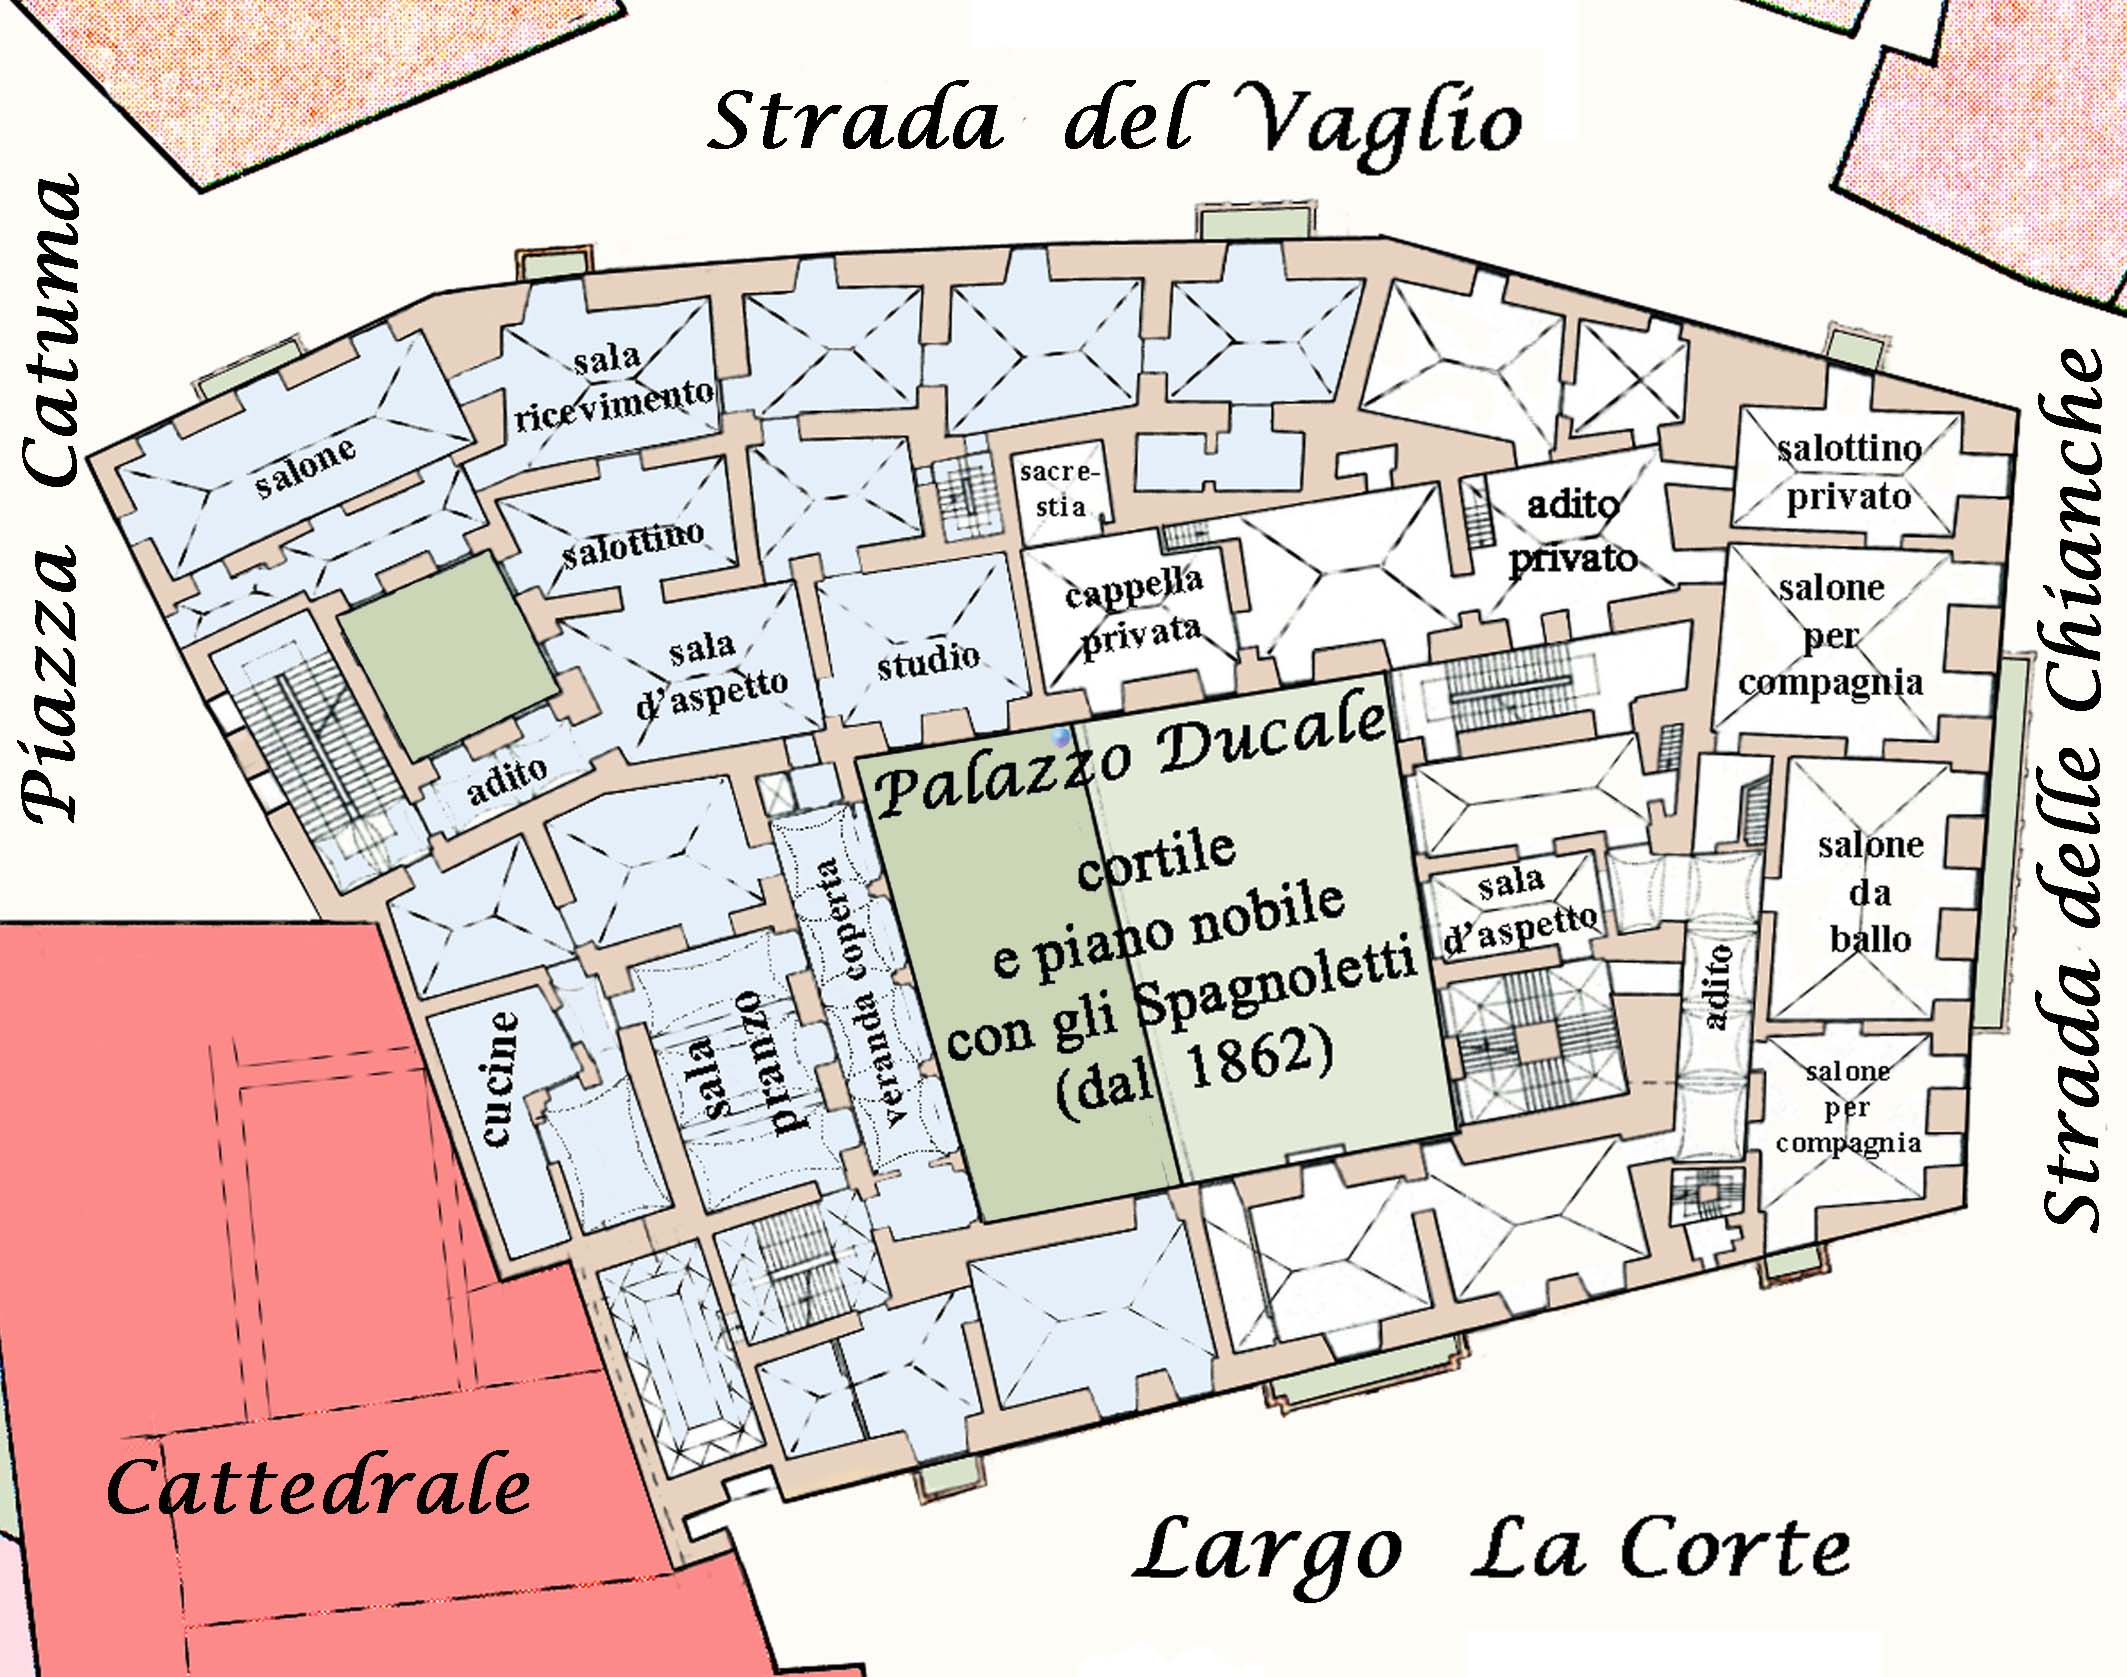 Pianta del piano nobile del Palazzo ducale nella carta topografica della Città, primo '900